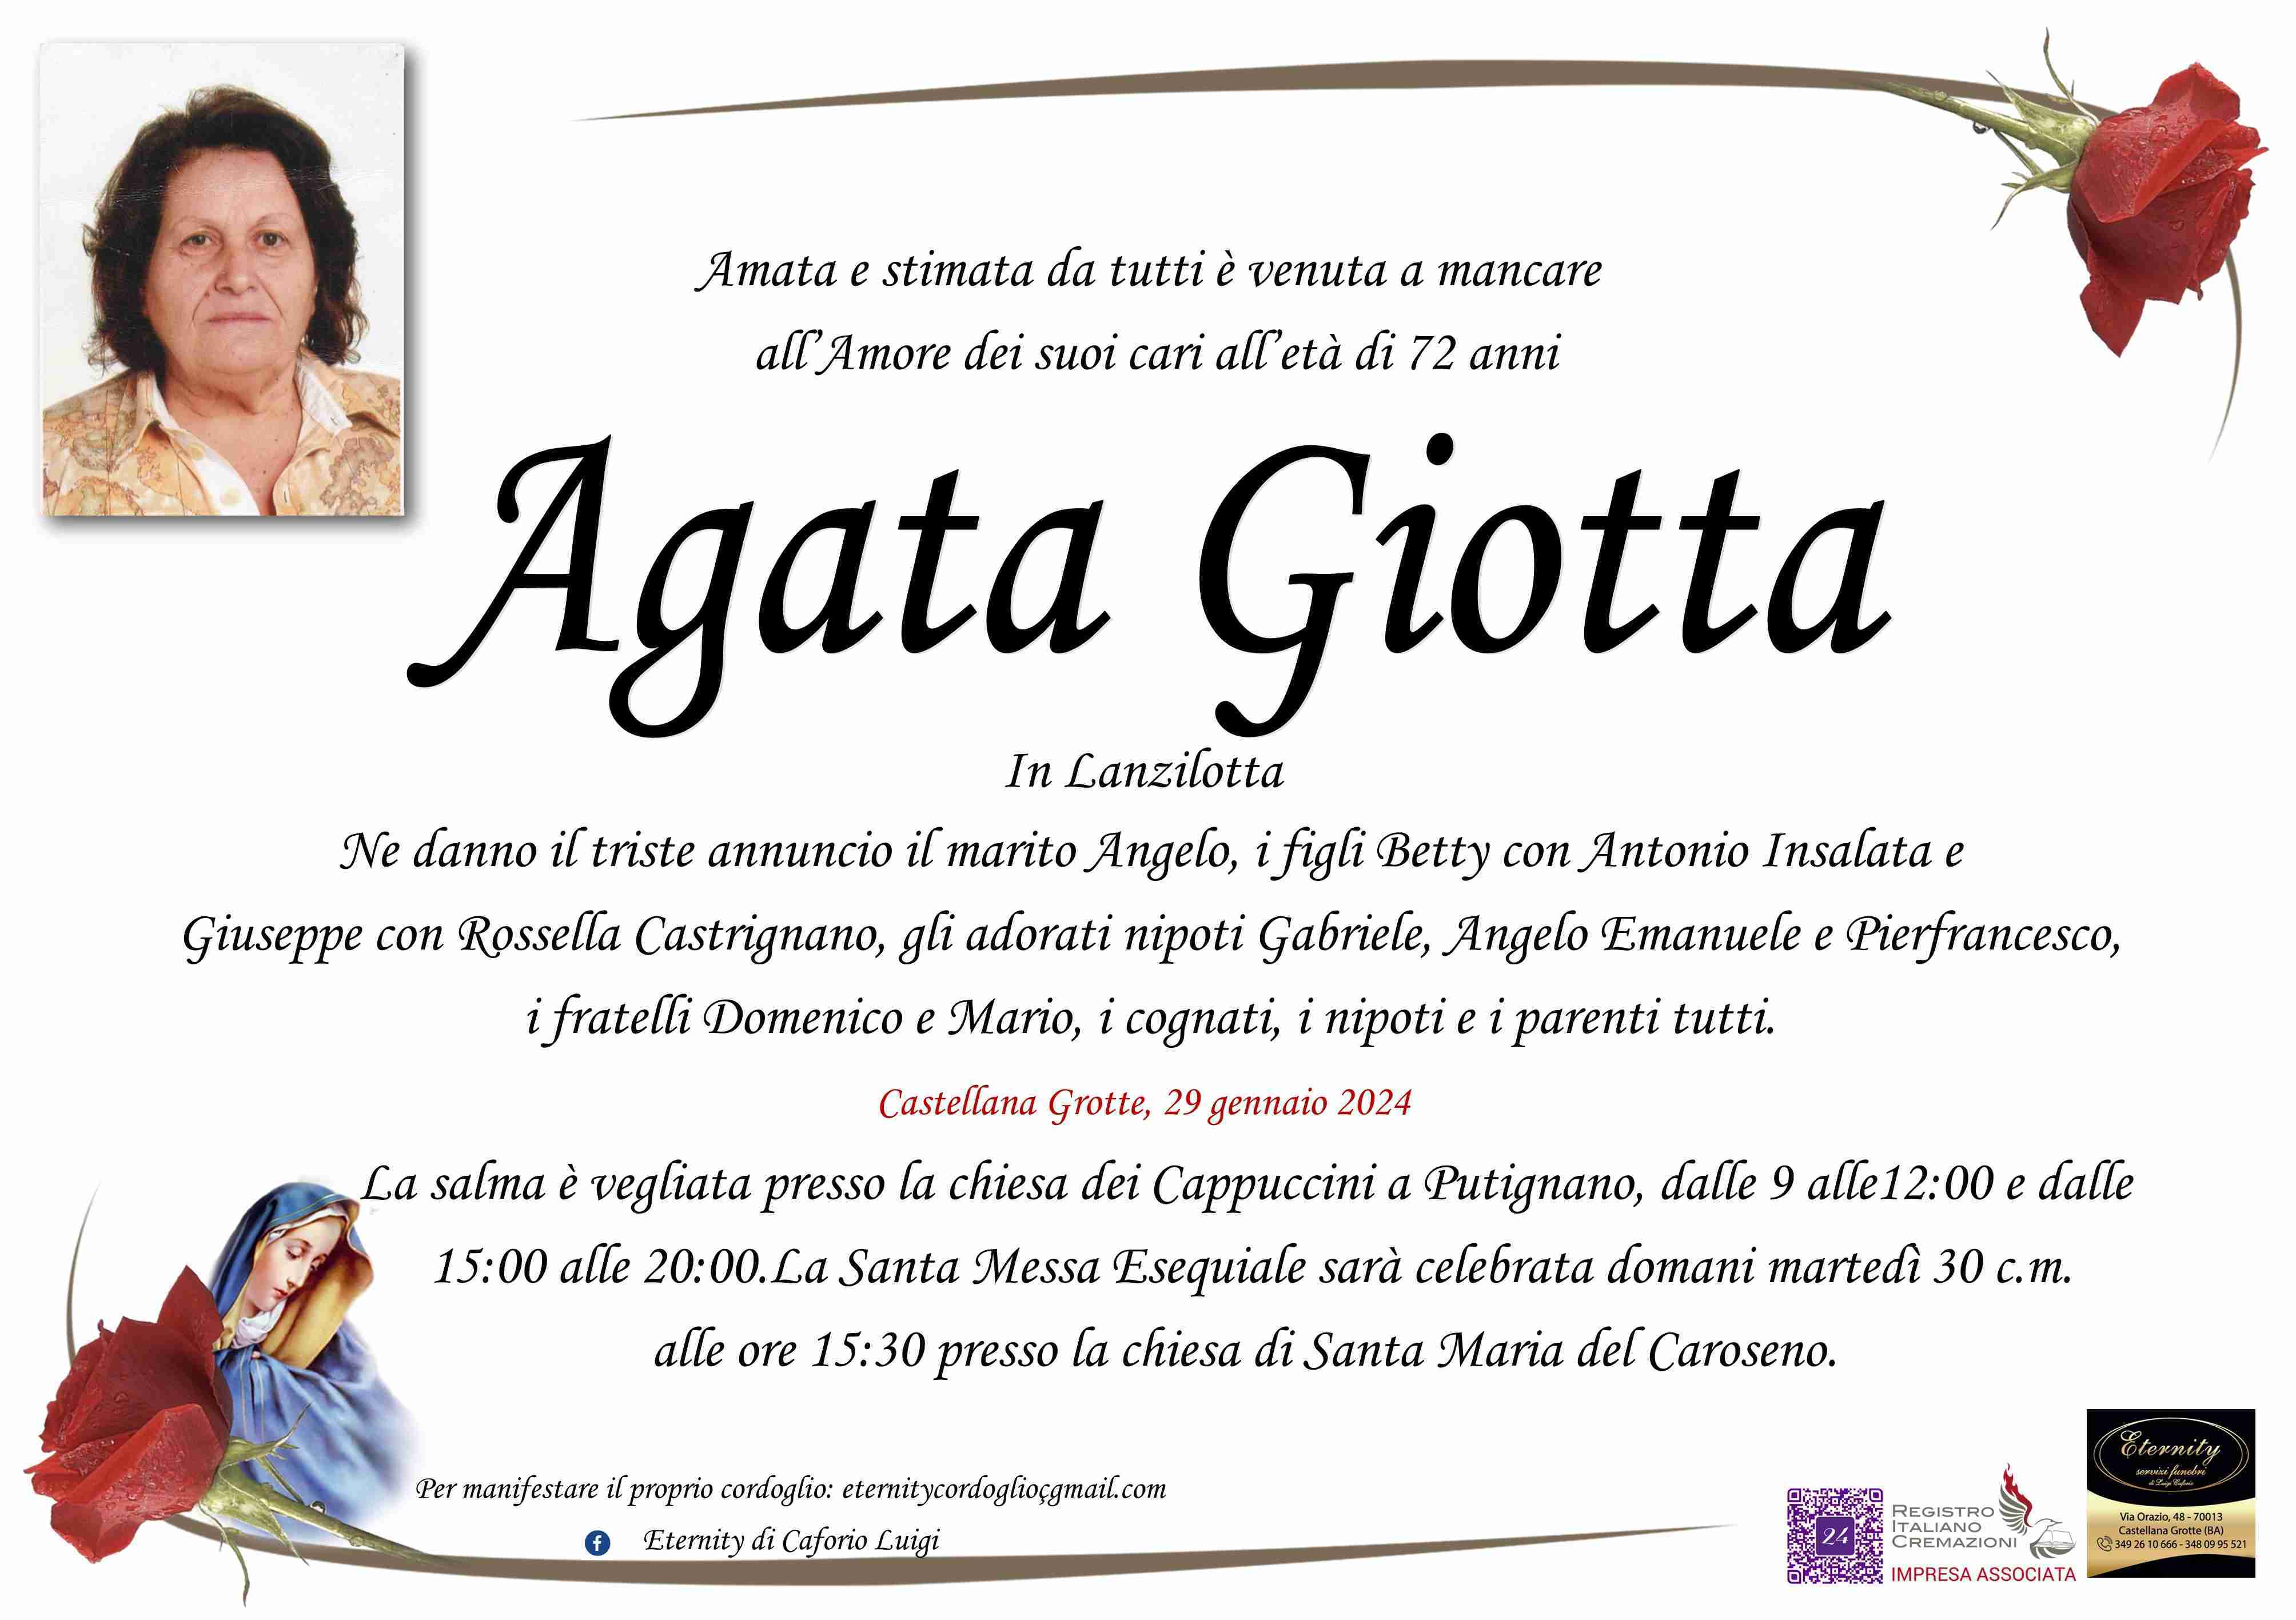 Agata Giotta